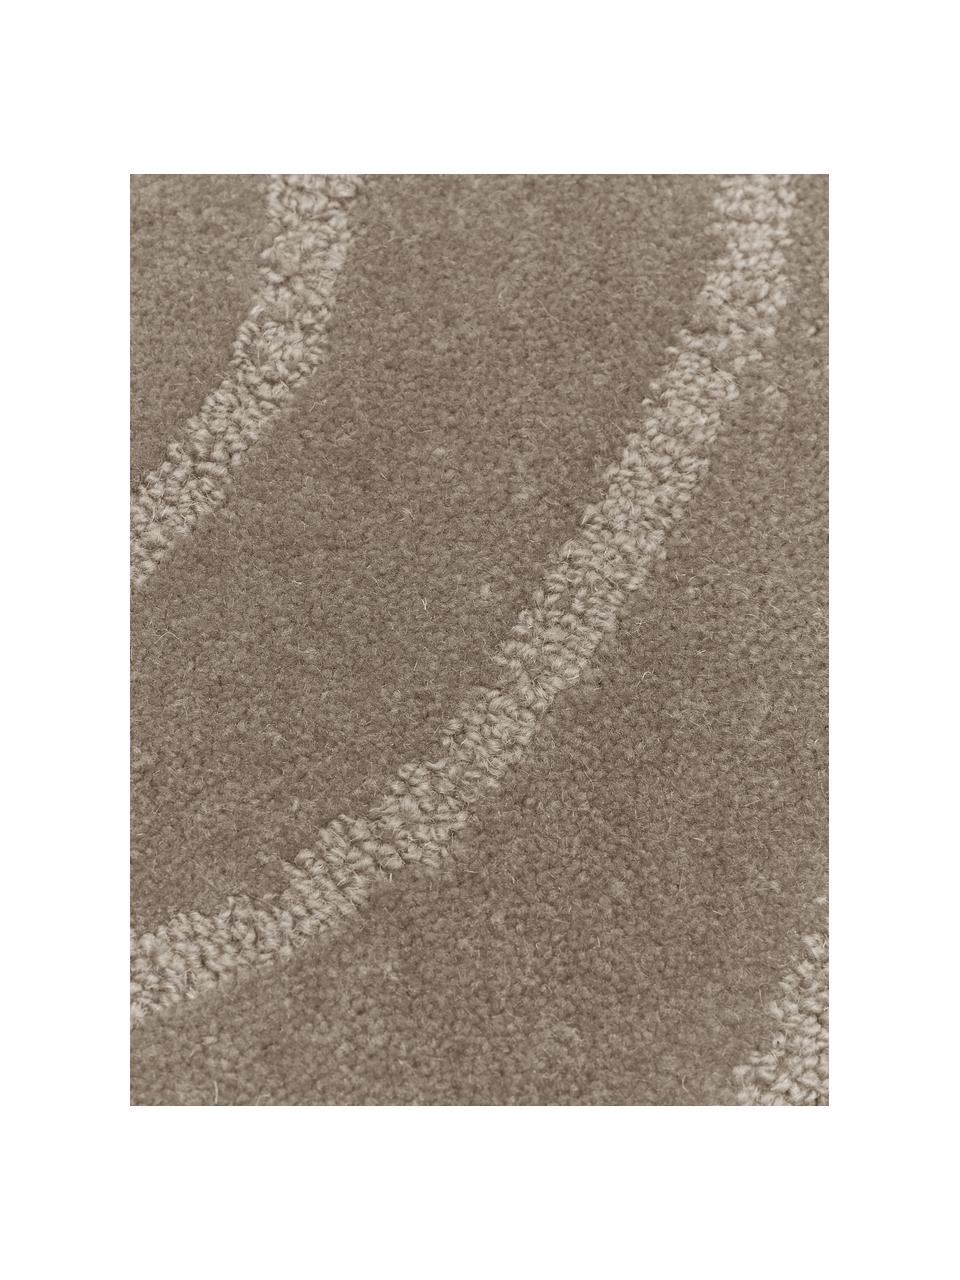 Kulatý ručně všívaný vlněný koberec Aaron, Taupe, Ø 150 cm (velikost M)